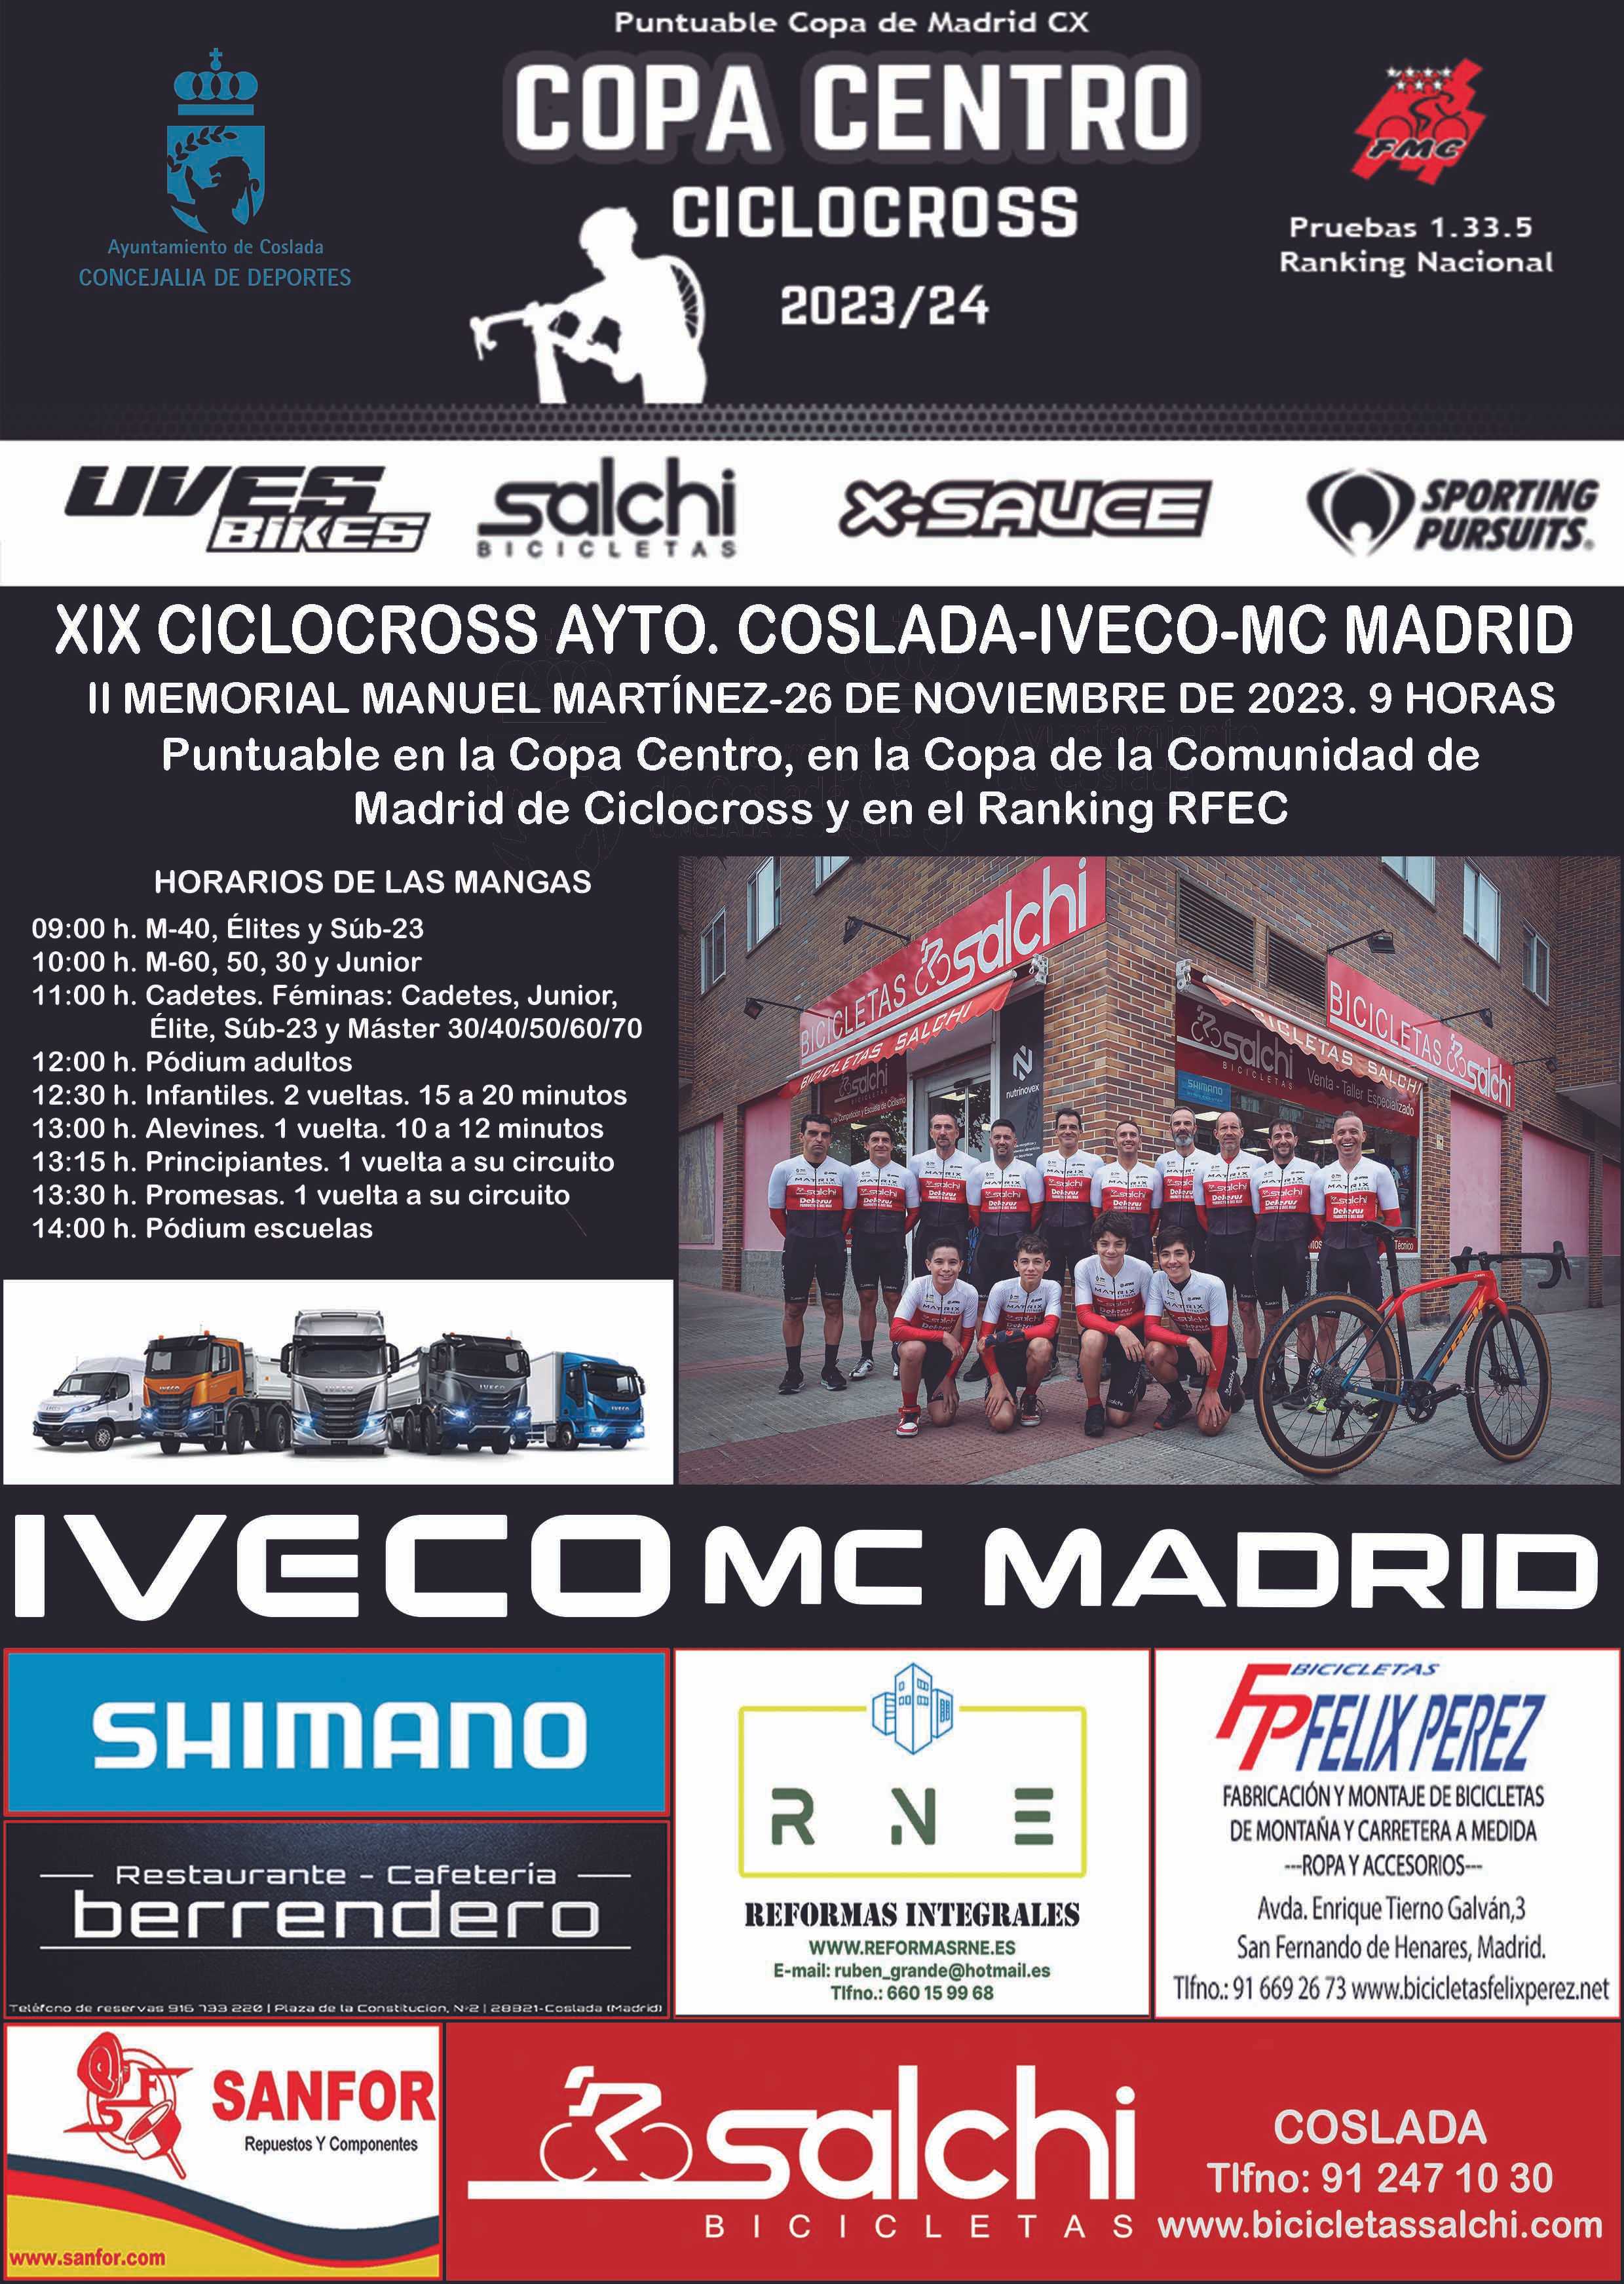 El domingo se disputa el XIX Ciclocross de Coslada-IVECO-MC Madrid